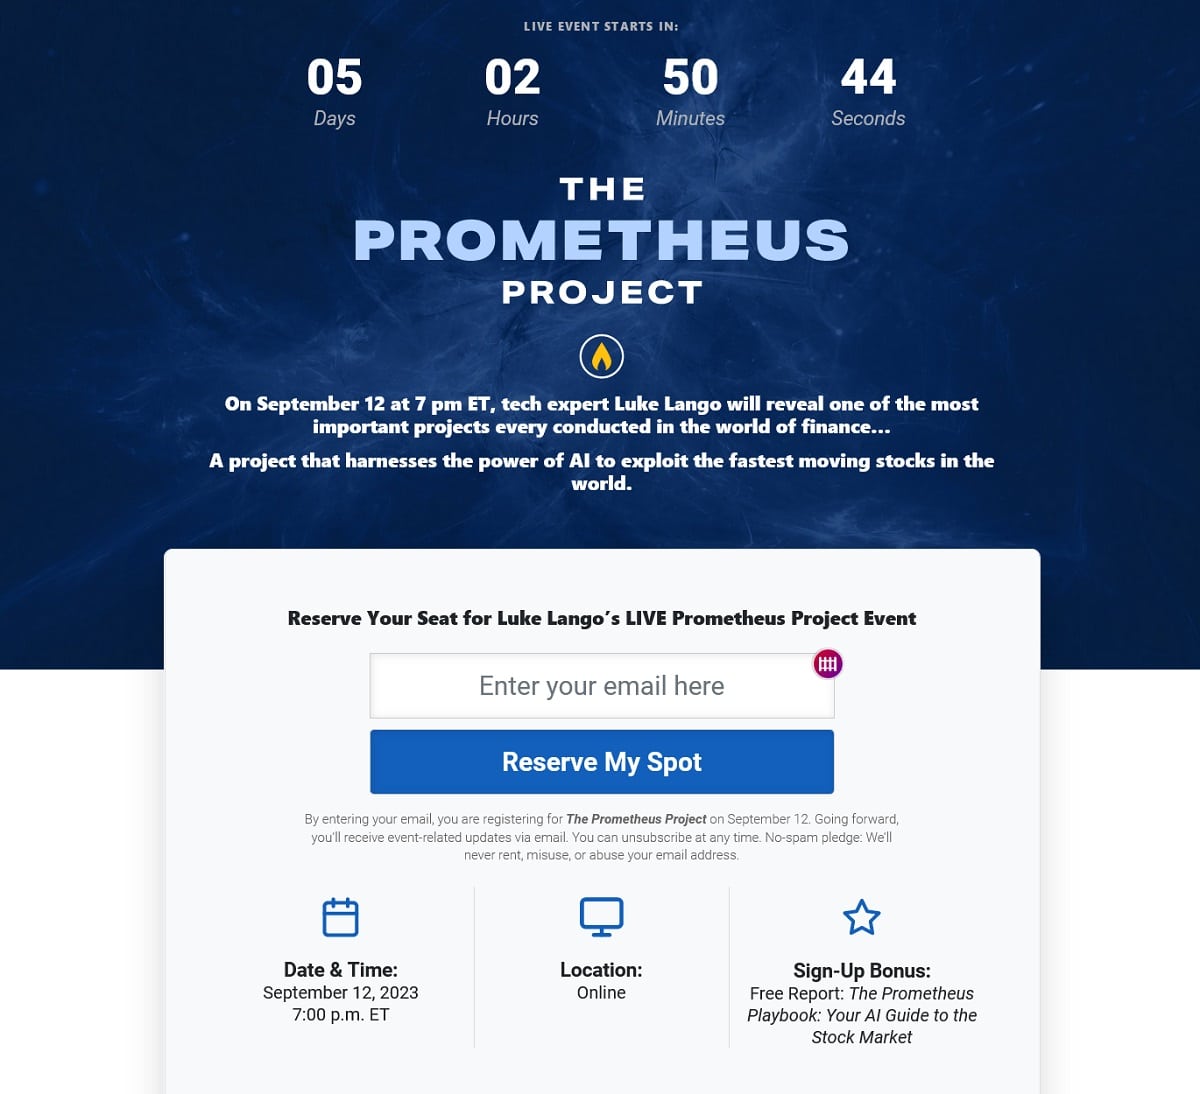 Luke Lango Prometheus Project Event Details